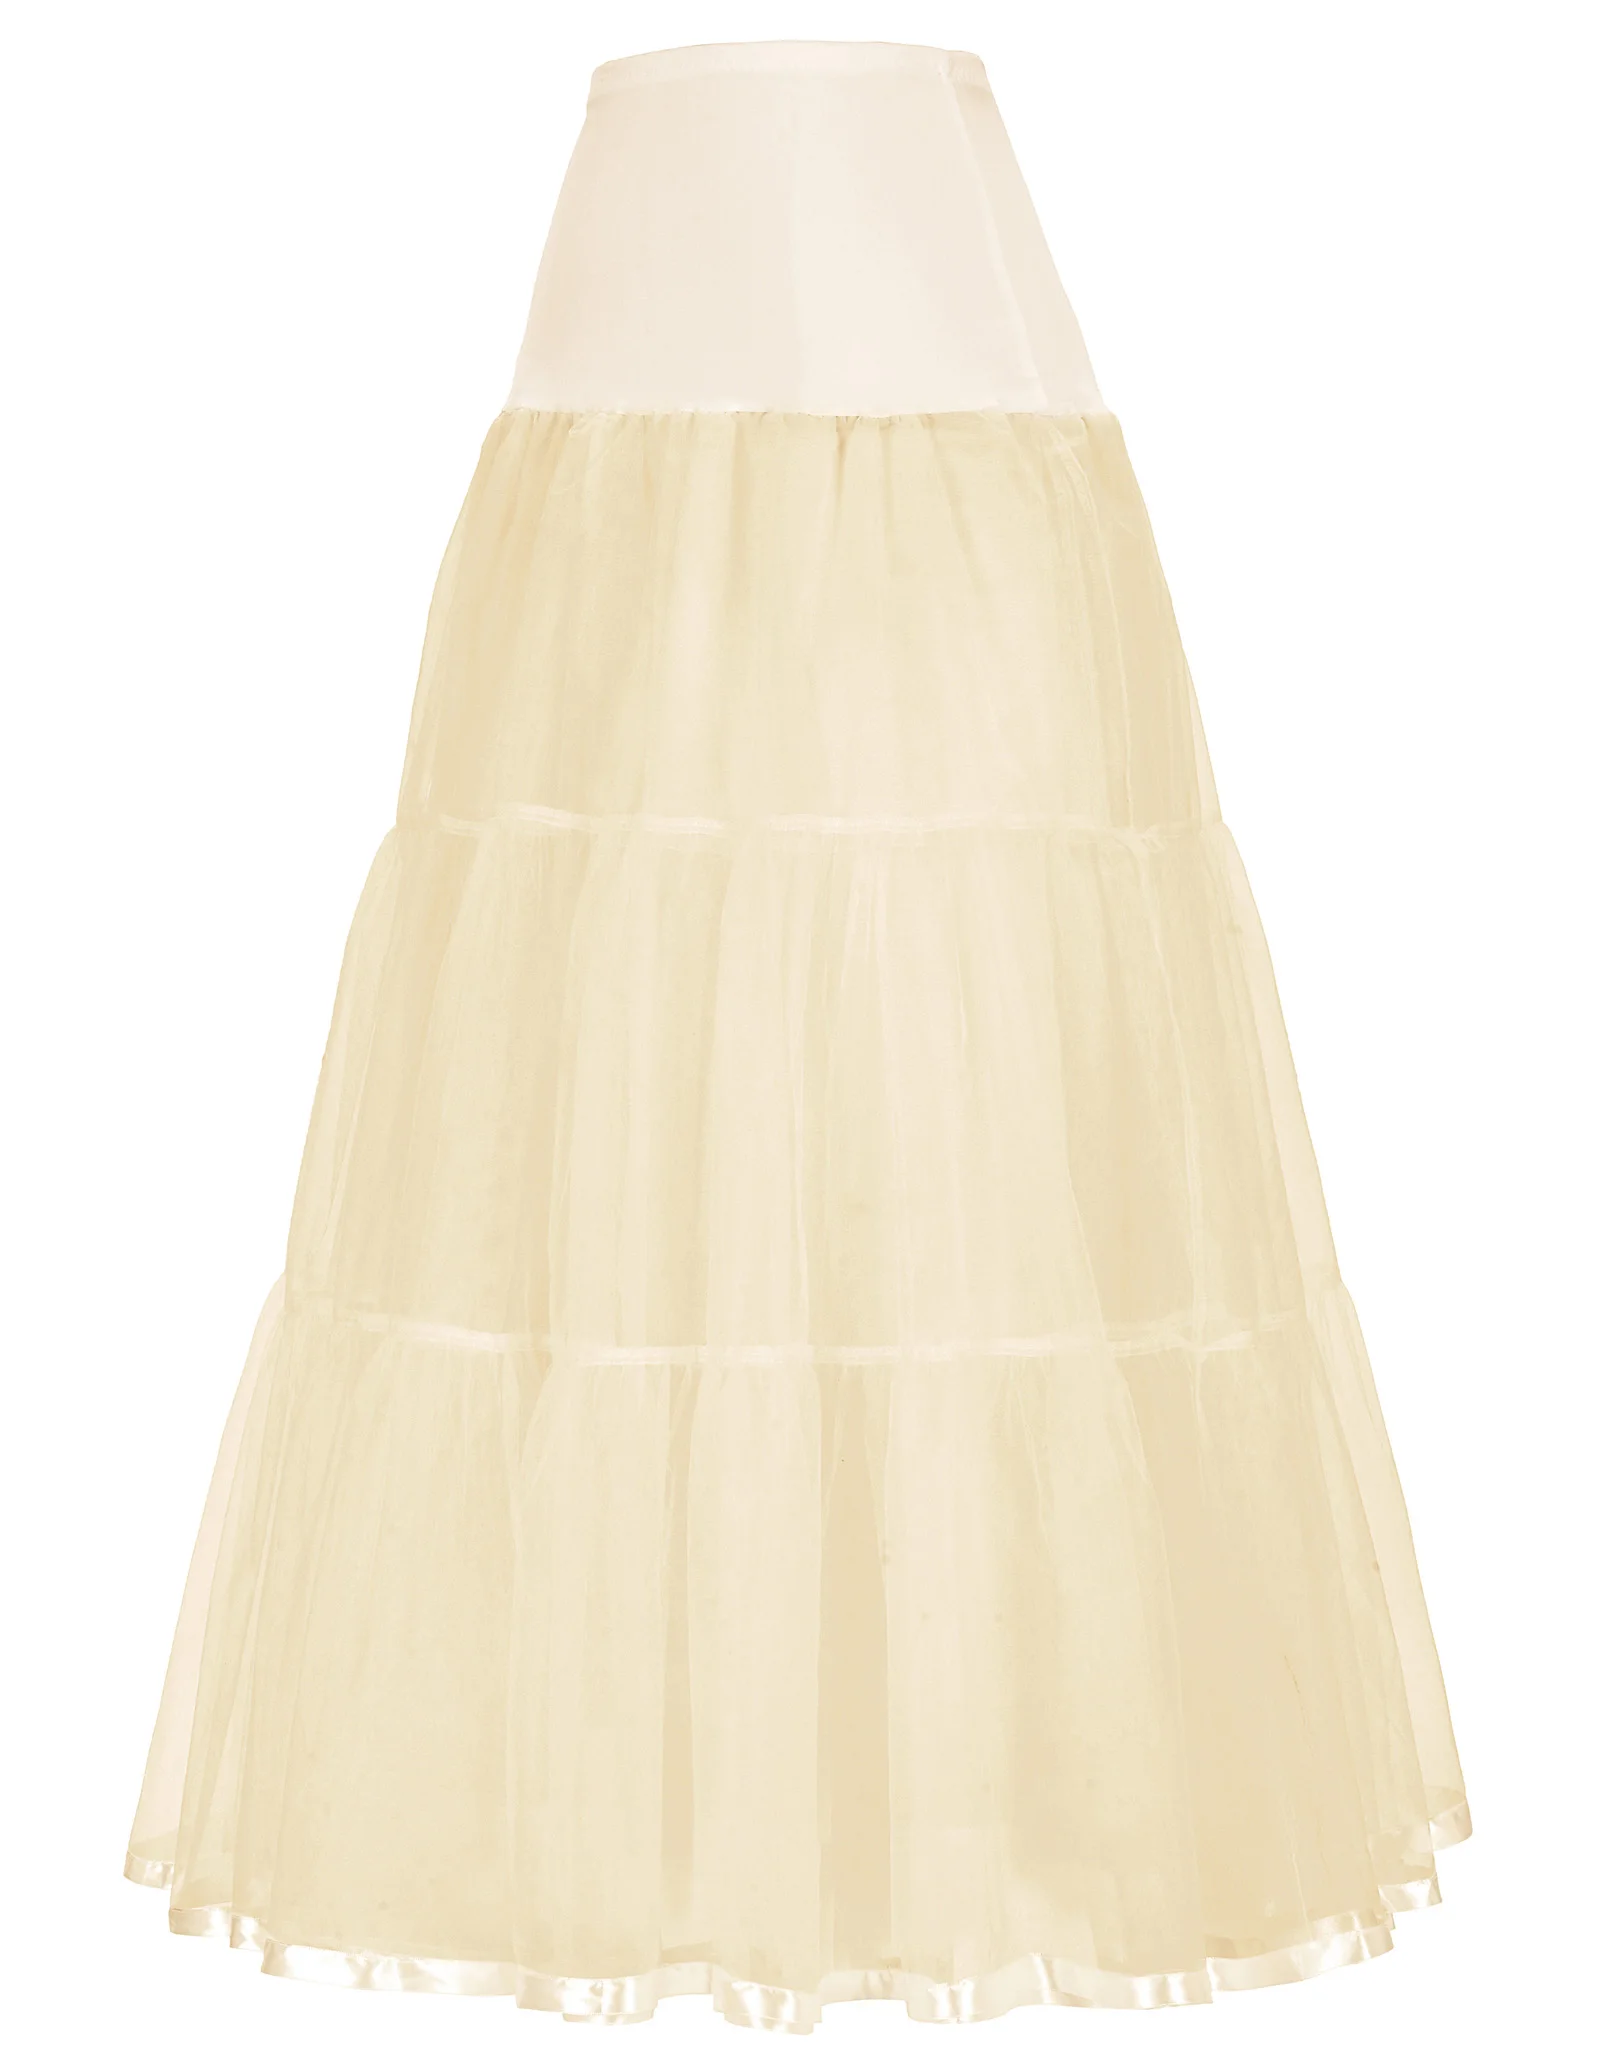 Нижняя юбка для свадебного платья ретро винтажная Женская мини-юбка слипы Тюлевая Нижняя юбка кринолин Jupon Pettico